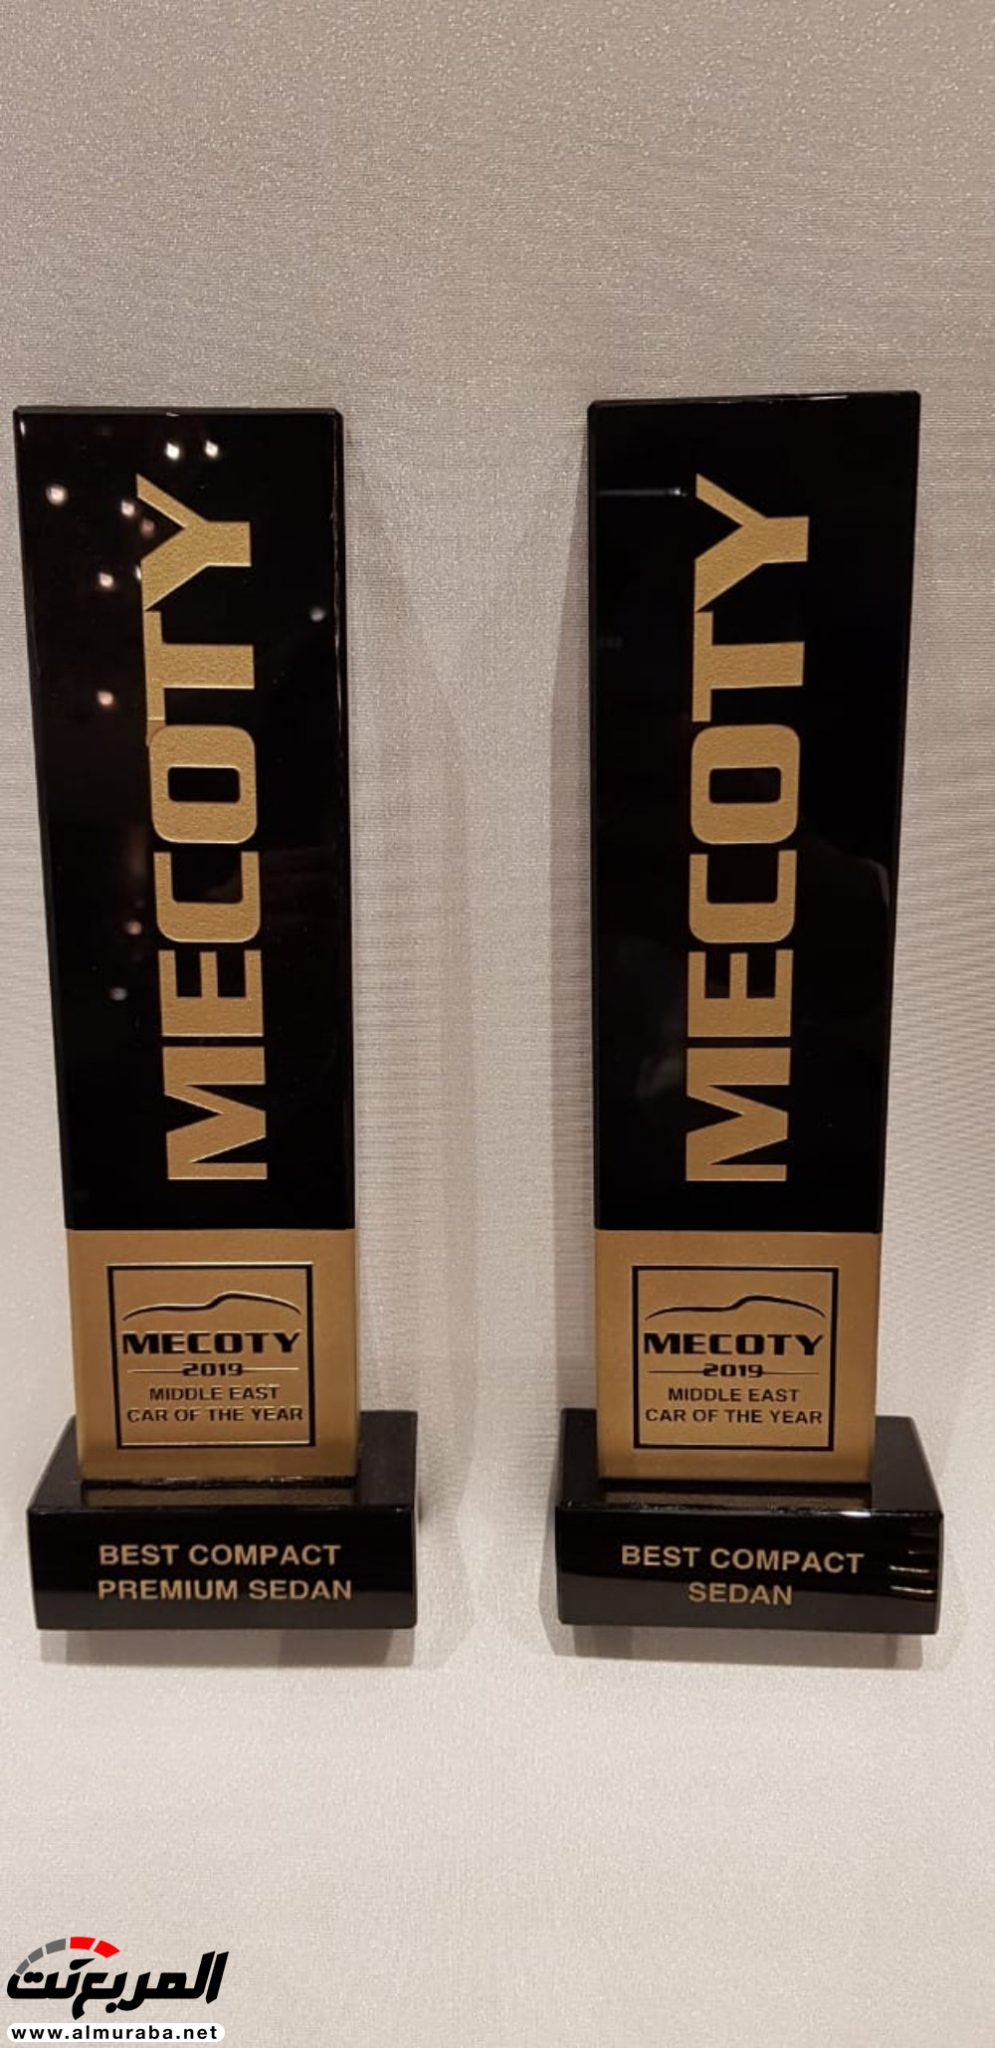 كيا "ستينجر وسيراتو" تحصدان جوائز MECOTY 2019 لأفضل طرازات فئة السيدان الصغيرة والفاخرة 8